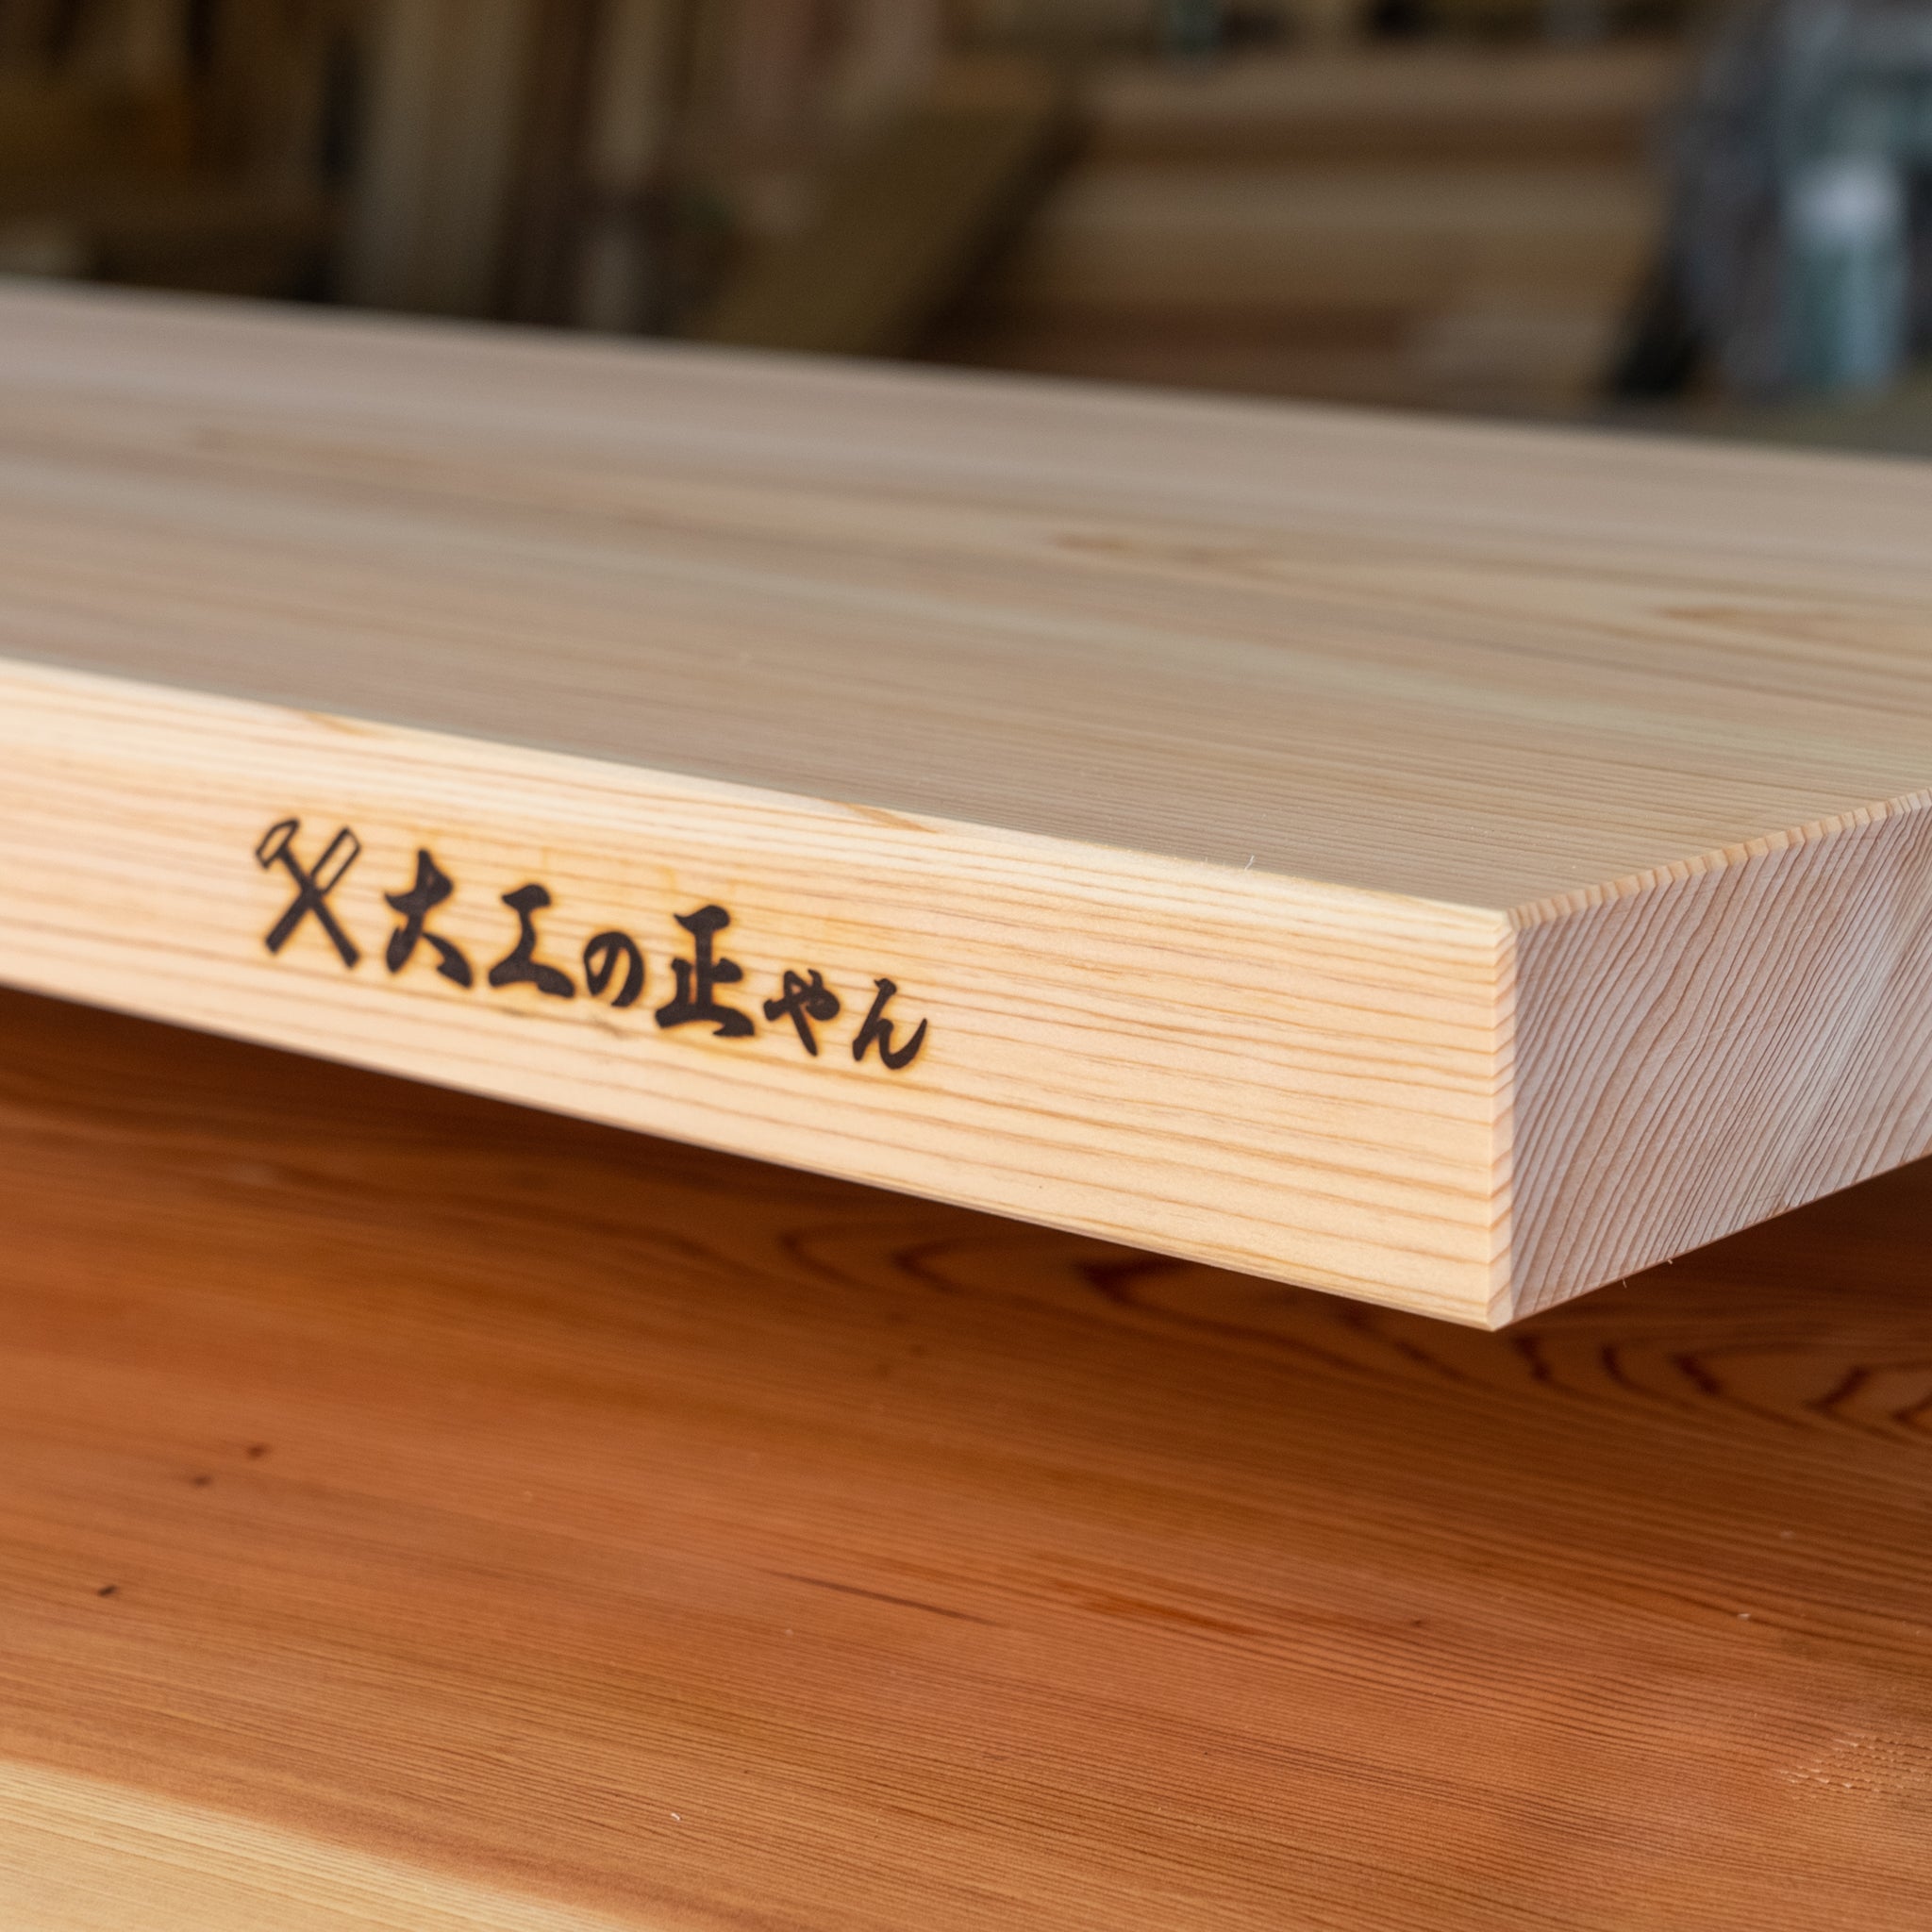 【一点物】檜のまな板 120×35.5×4.3cm